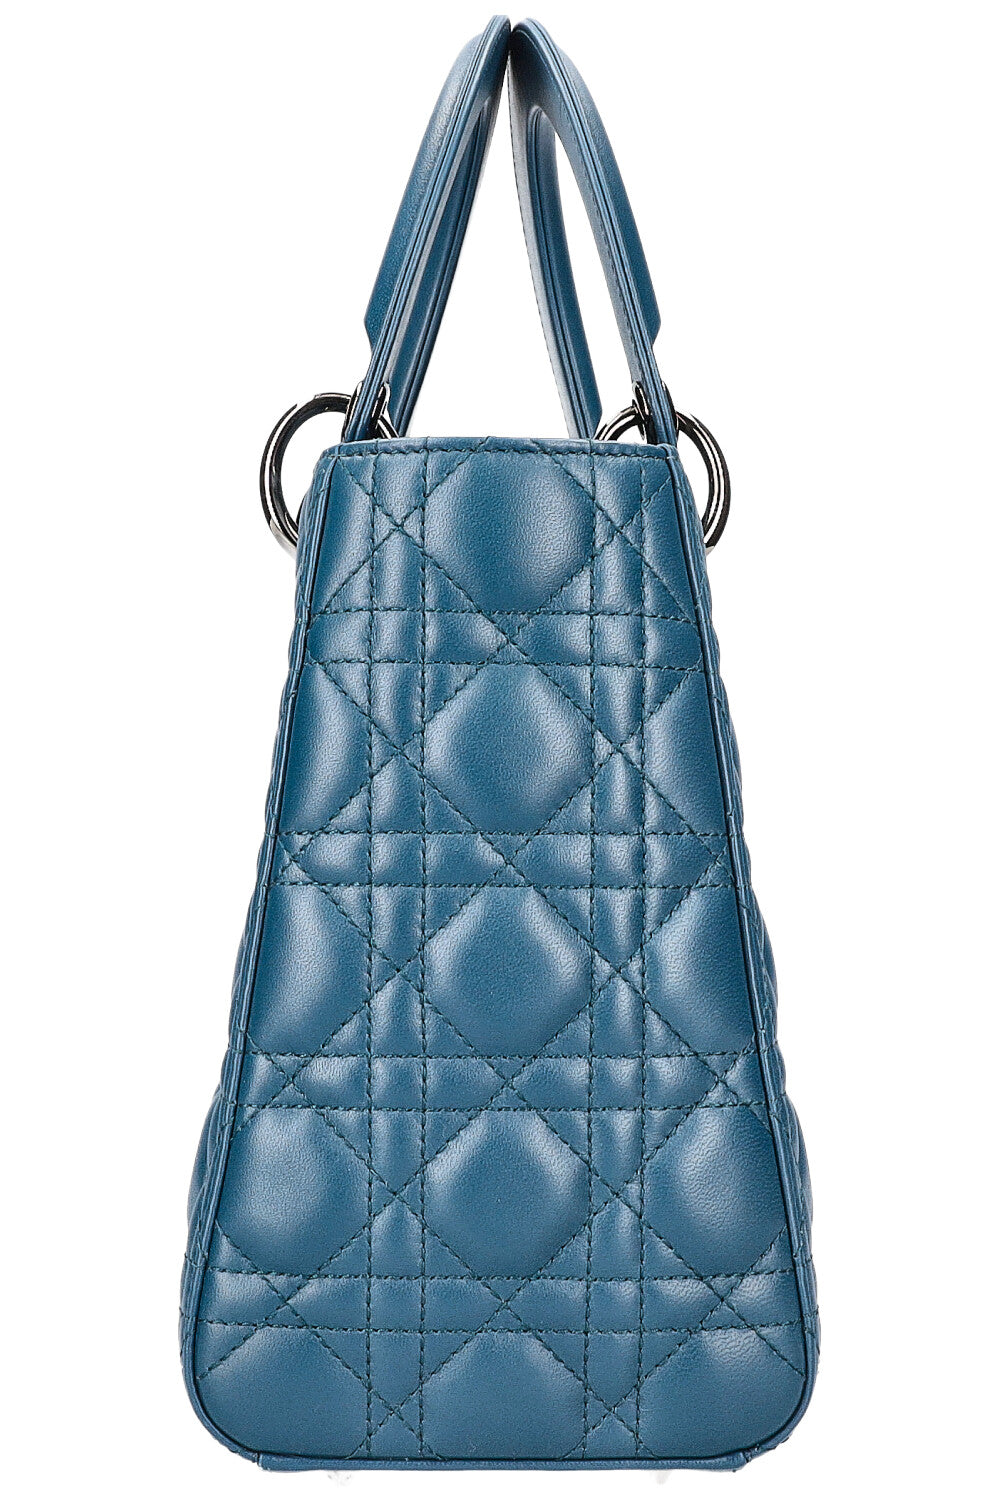 CHRISTIAN DIOR Lady Dior Bag Medium Blue